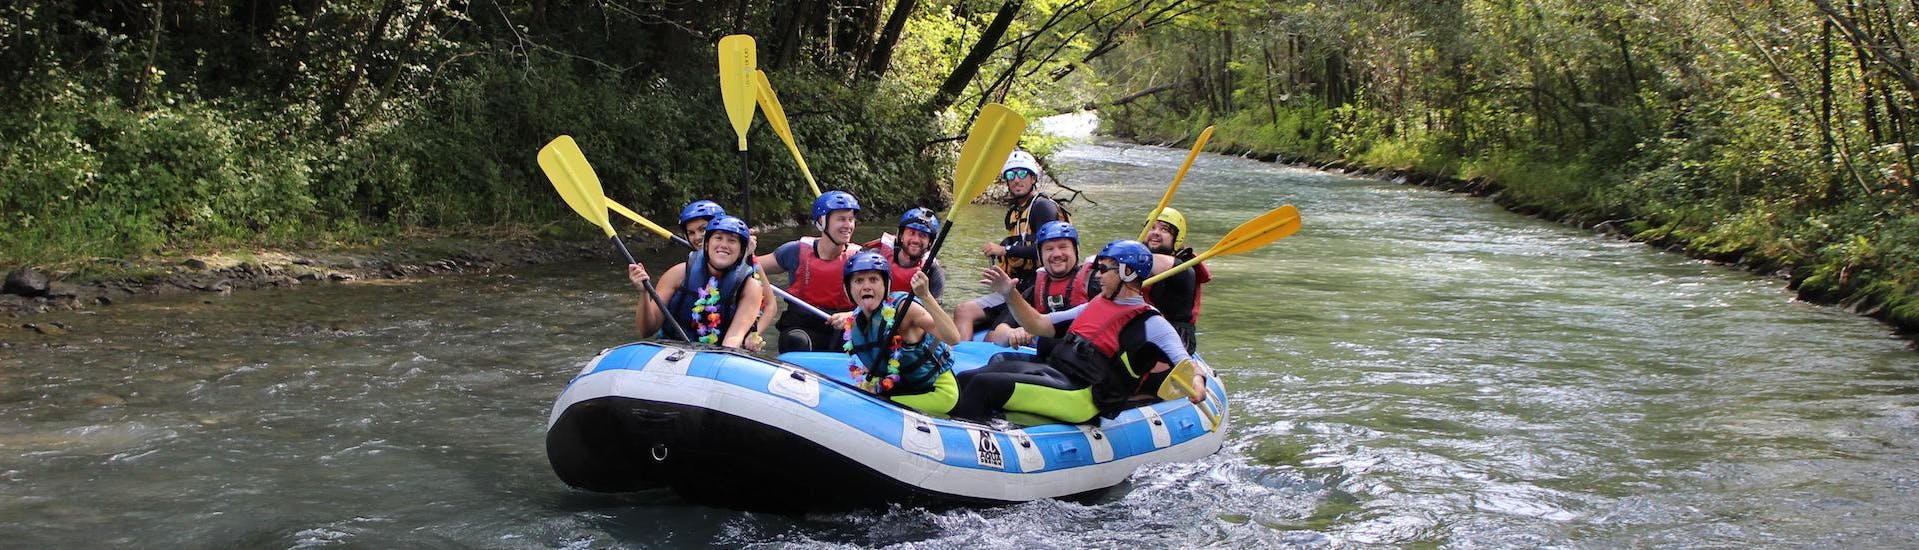 I partecipanti dell Rafting Classic sul fiume Adda con Indomita Valtellina River si stanno divertendo molto.